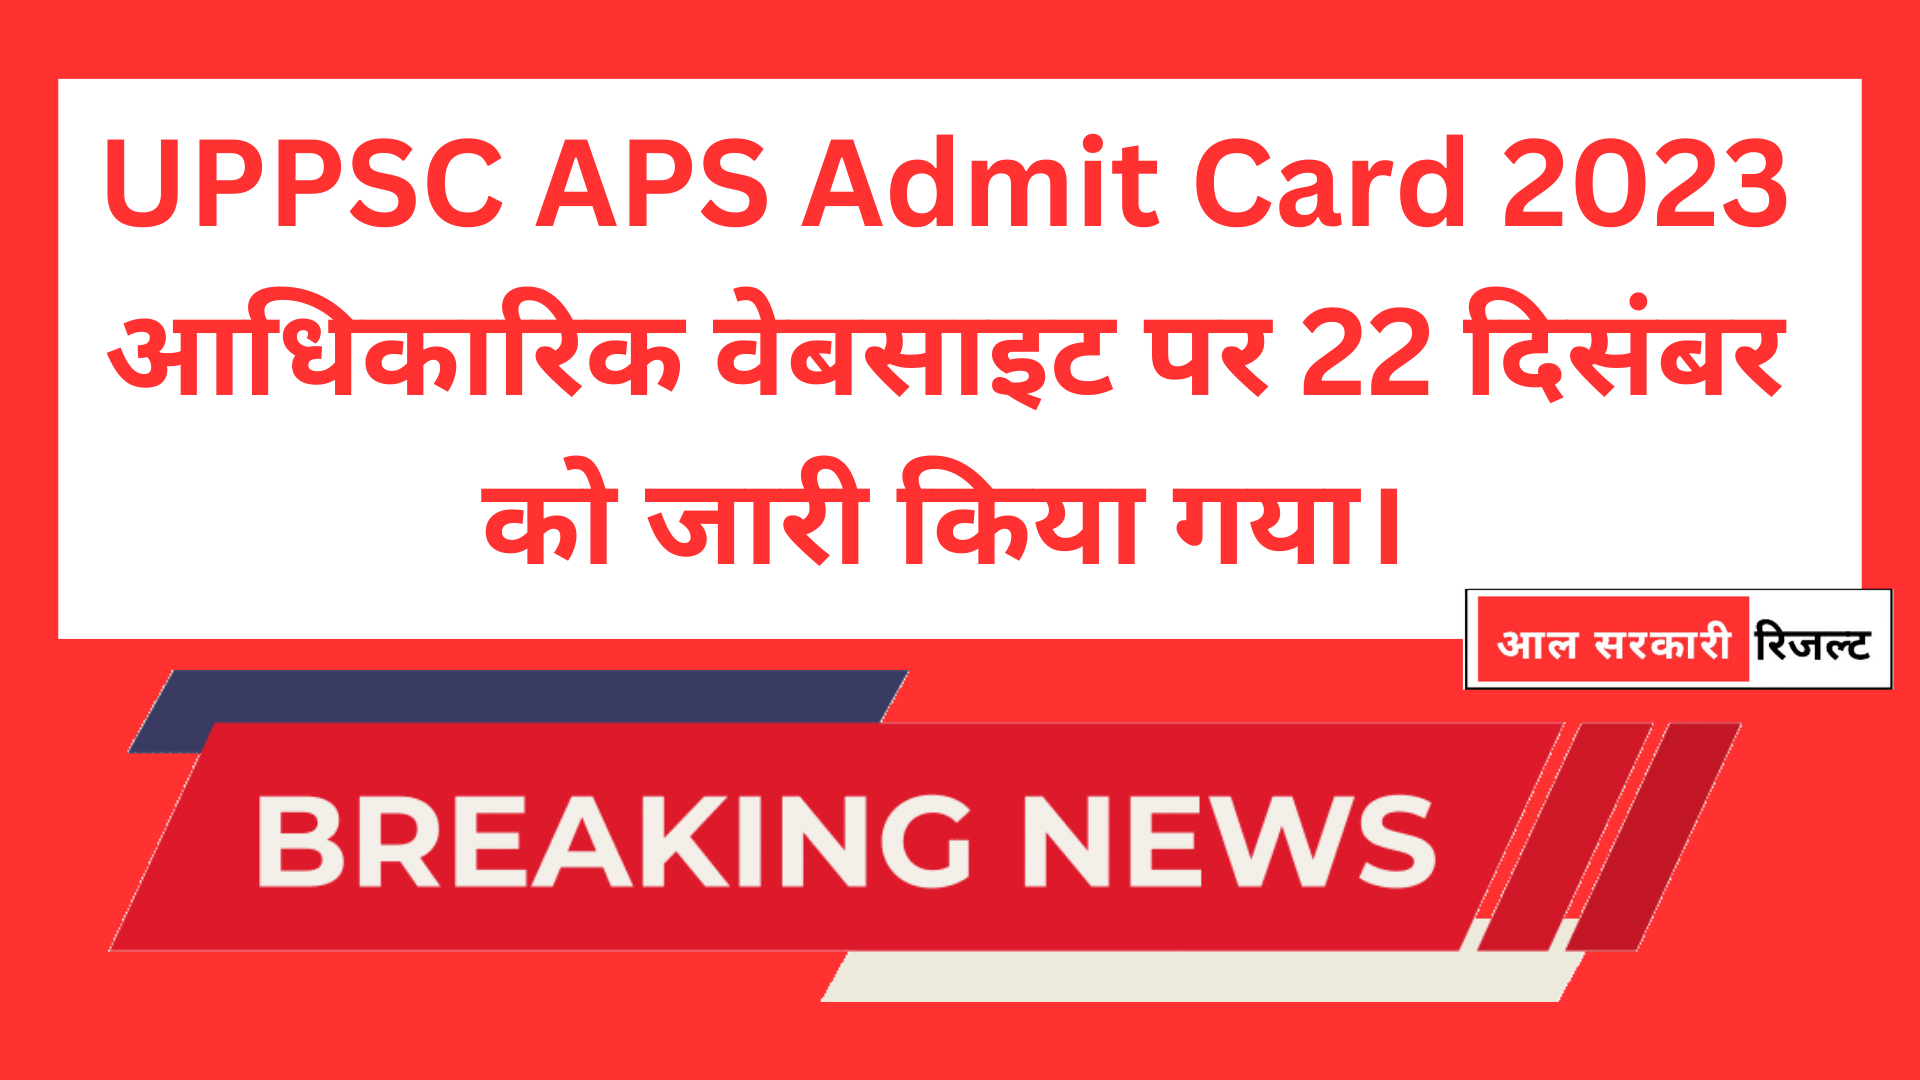 UPPSC APS Admit Card 2023 आधिकारिक वेबसाइट पर 22 दिसंबर को जारी किया गया।